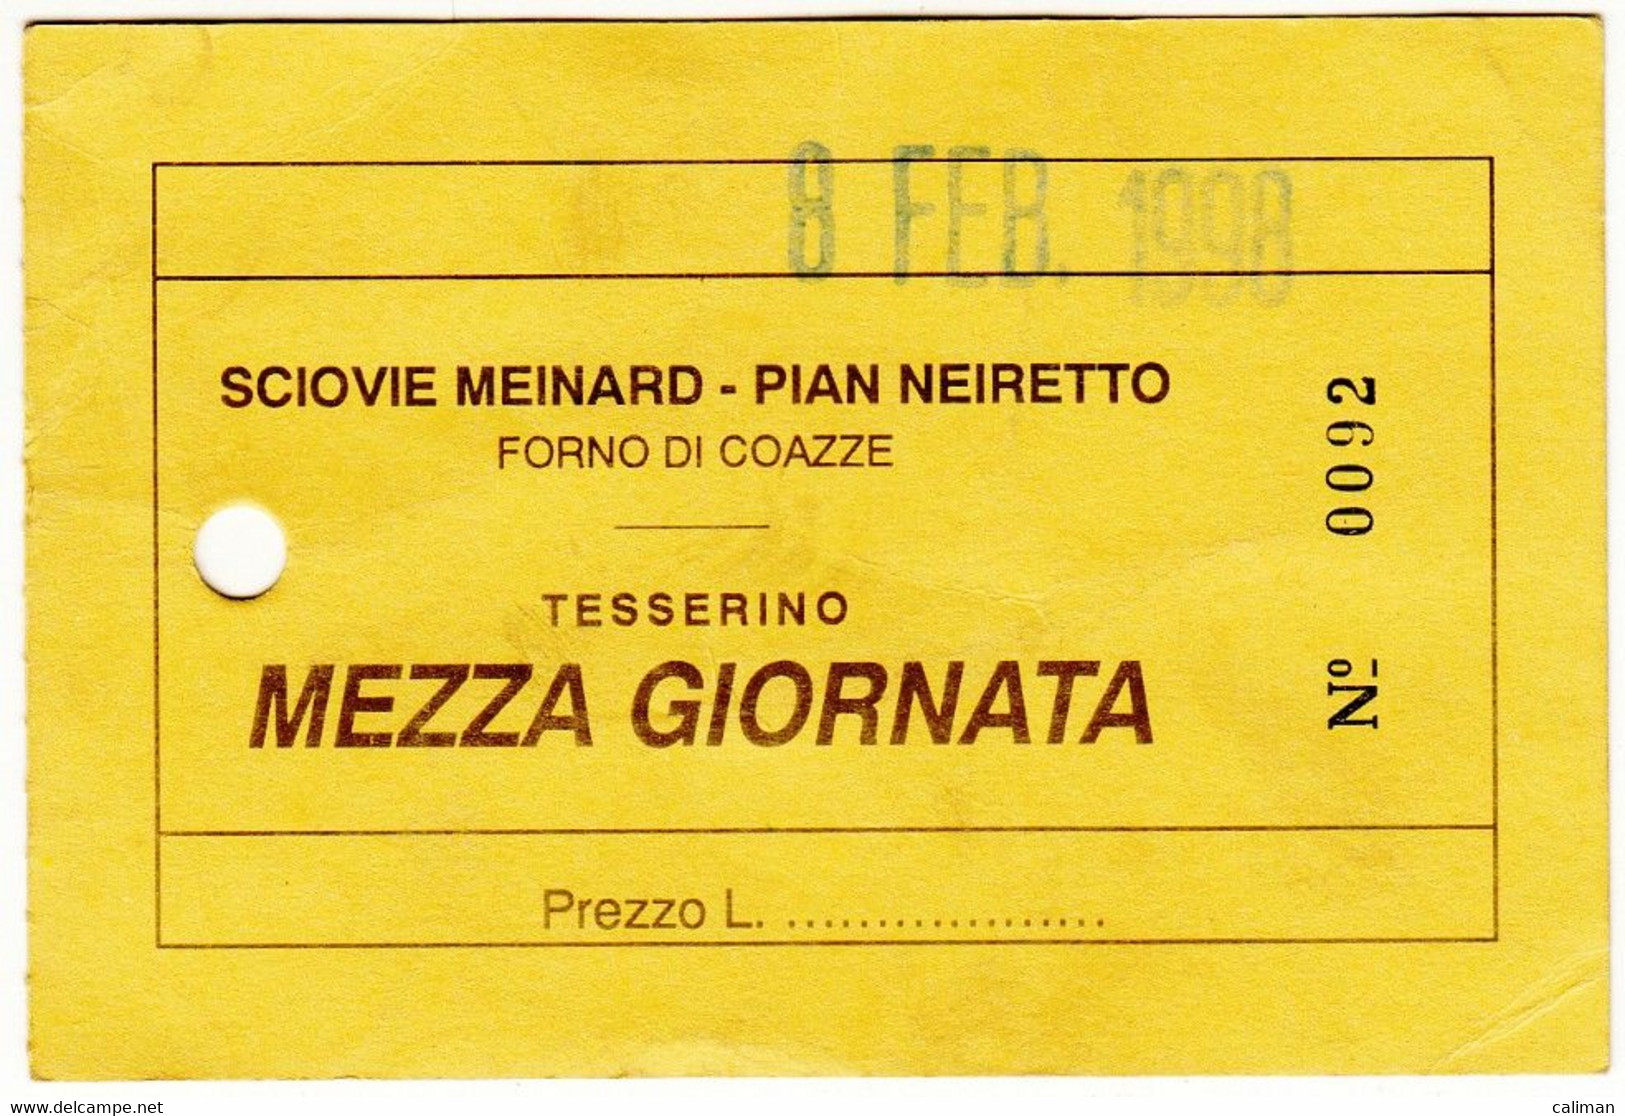 SKIPASS ABBONAMENTO MEZZA GIORNATA SCIOVIE MEINARD PIAN NEIRETTO FORNO DI COAZZE 1998 - Toegangskaarten